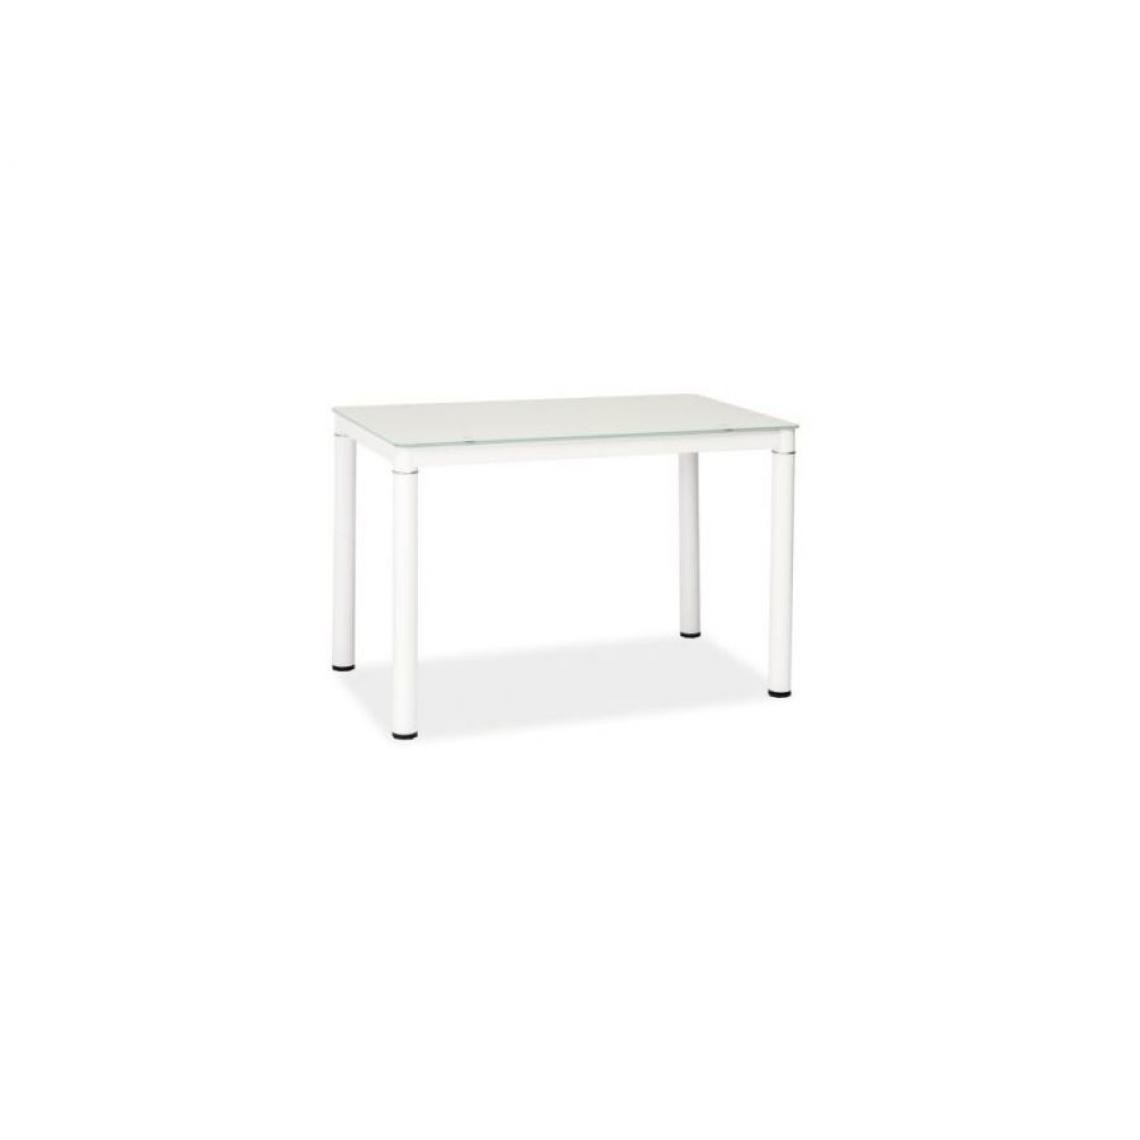 Hucoco - GARANT - Table moderne pour salle à manger salon - 100x60x75 cm - Plateau en verre - Pieds en métal - Blanc - Tables à manger